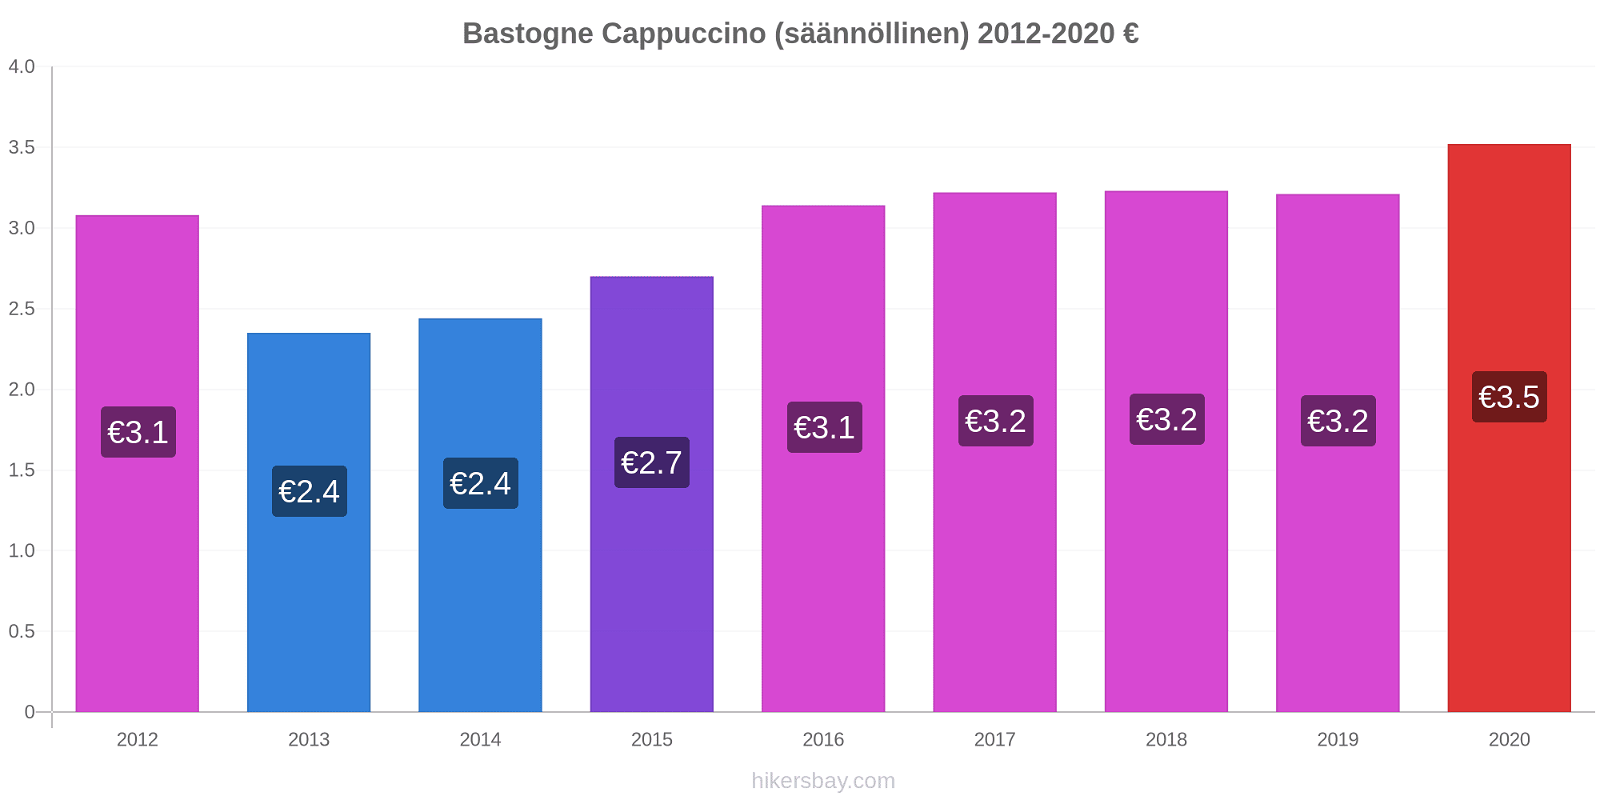 Bastogne hintojen muutokset Cappuccino (säännöllinen) hikersbay.com